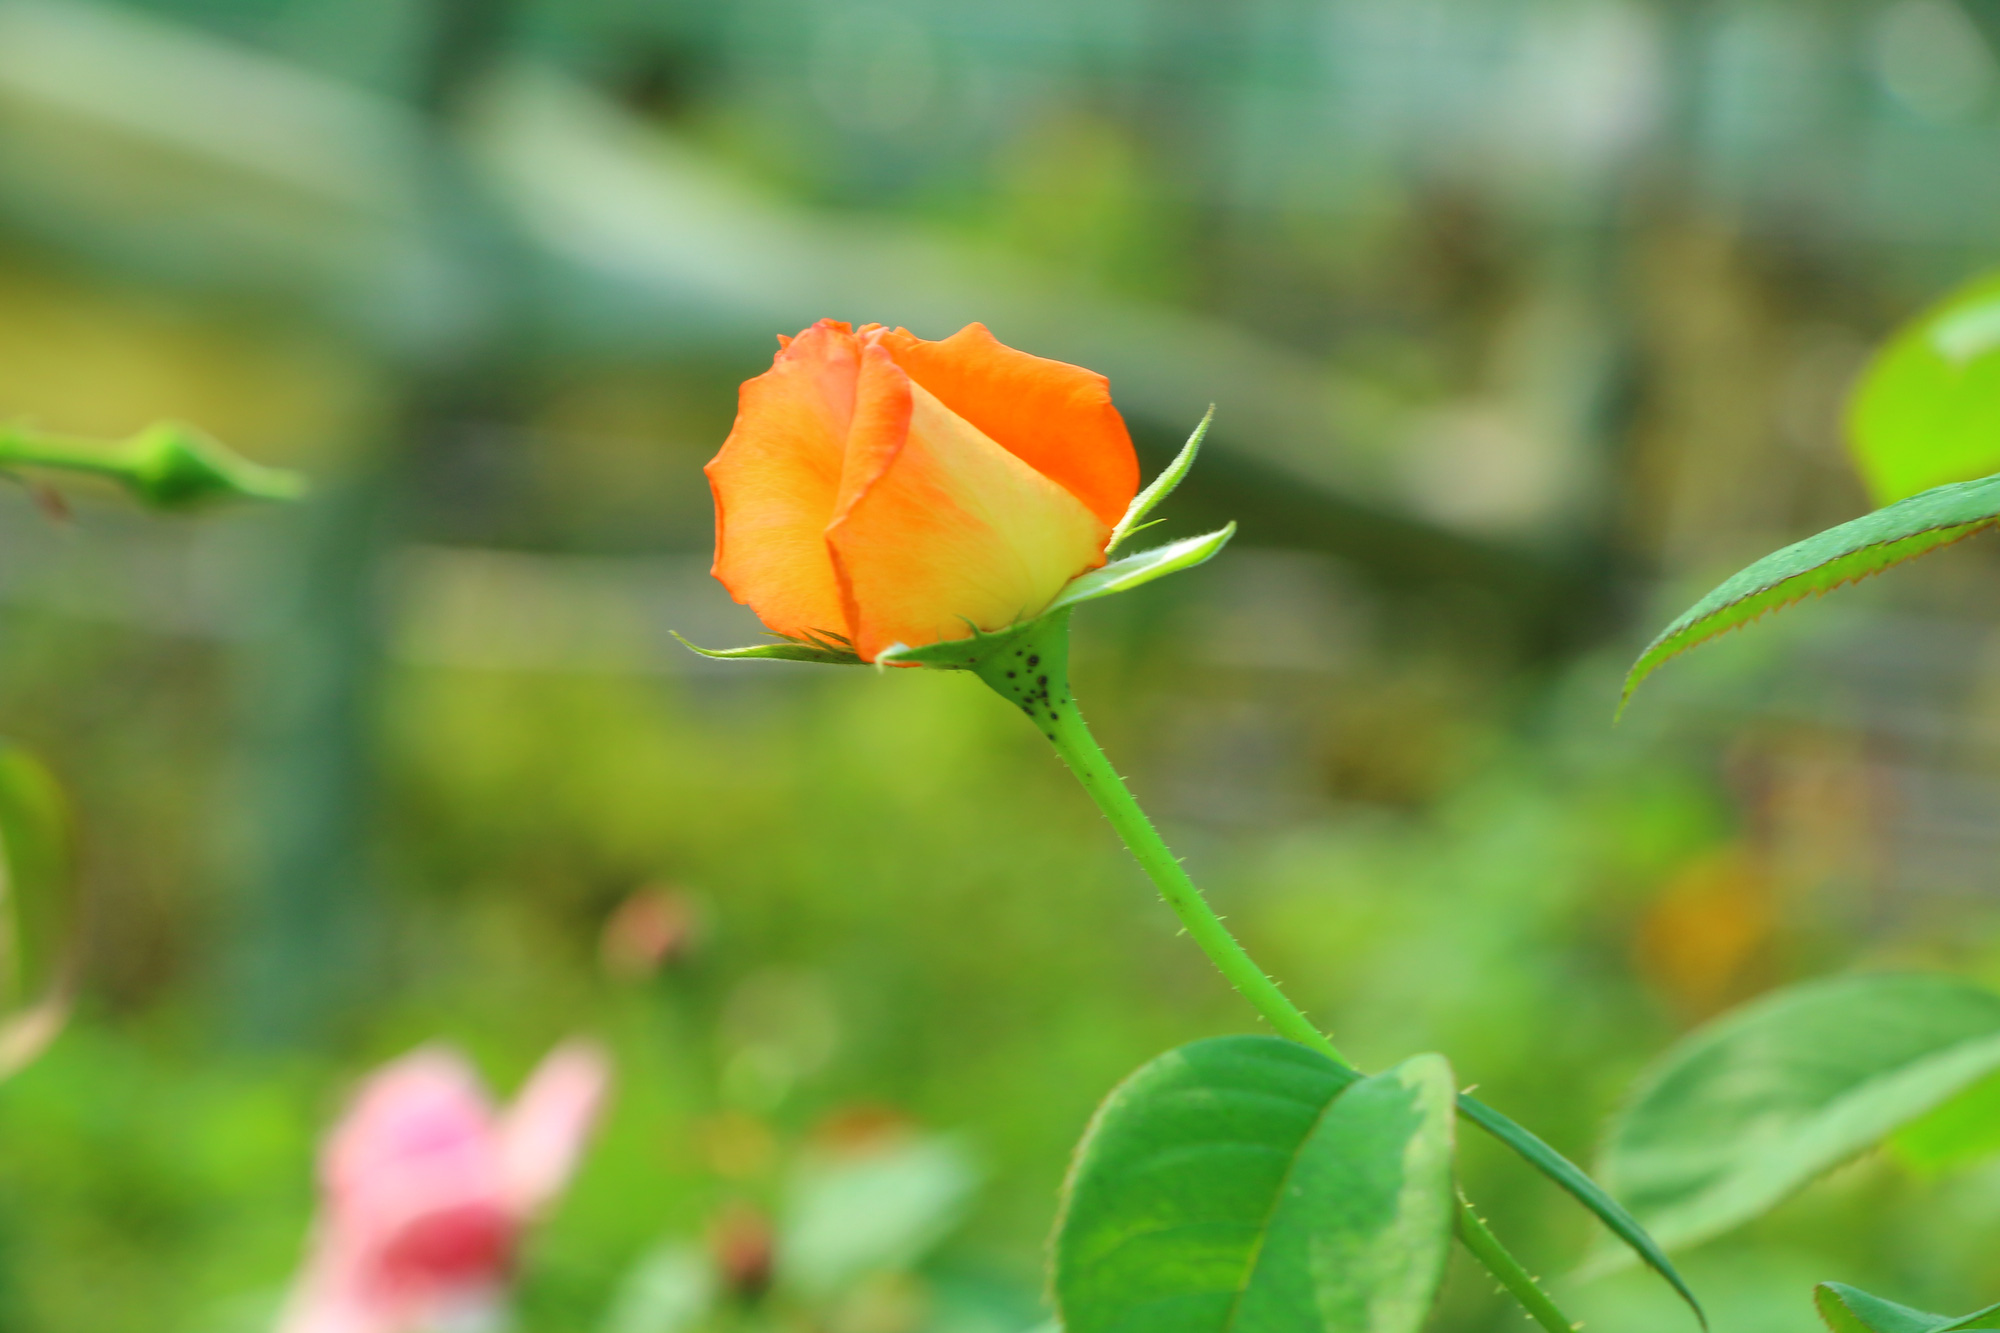 Tận hưởng vẻ đẹp tuyệt vời của vườn hoa hồng Pháp qua hình ảnh này. Vườn hoa hồng Pháp hấp dẫn và tinh tế, với những cánh hoa mỏng manh và hương thơm ngọt ngào, khiến bạn không thể rời mắt khỏi chúng. Hãy thưởng thức trọn vẹn sự đẹp của vườn hoa hồng Pháp.